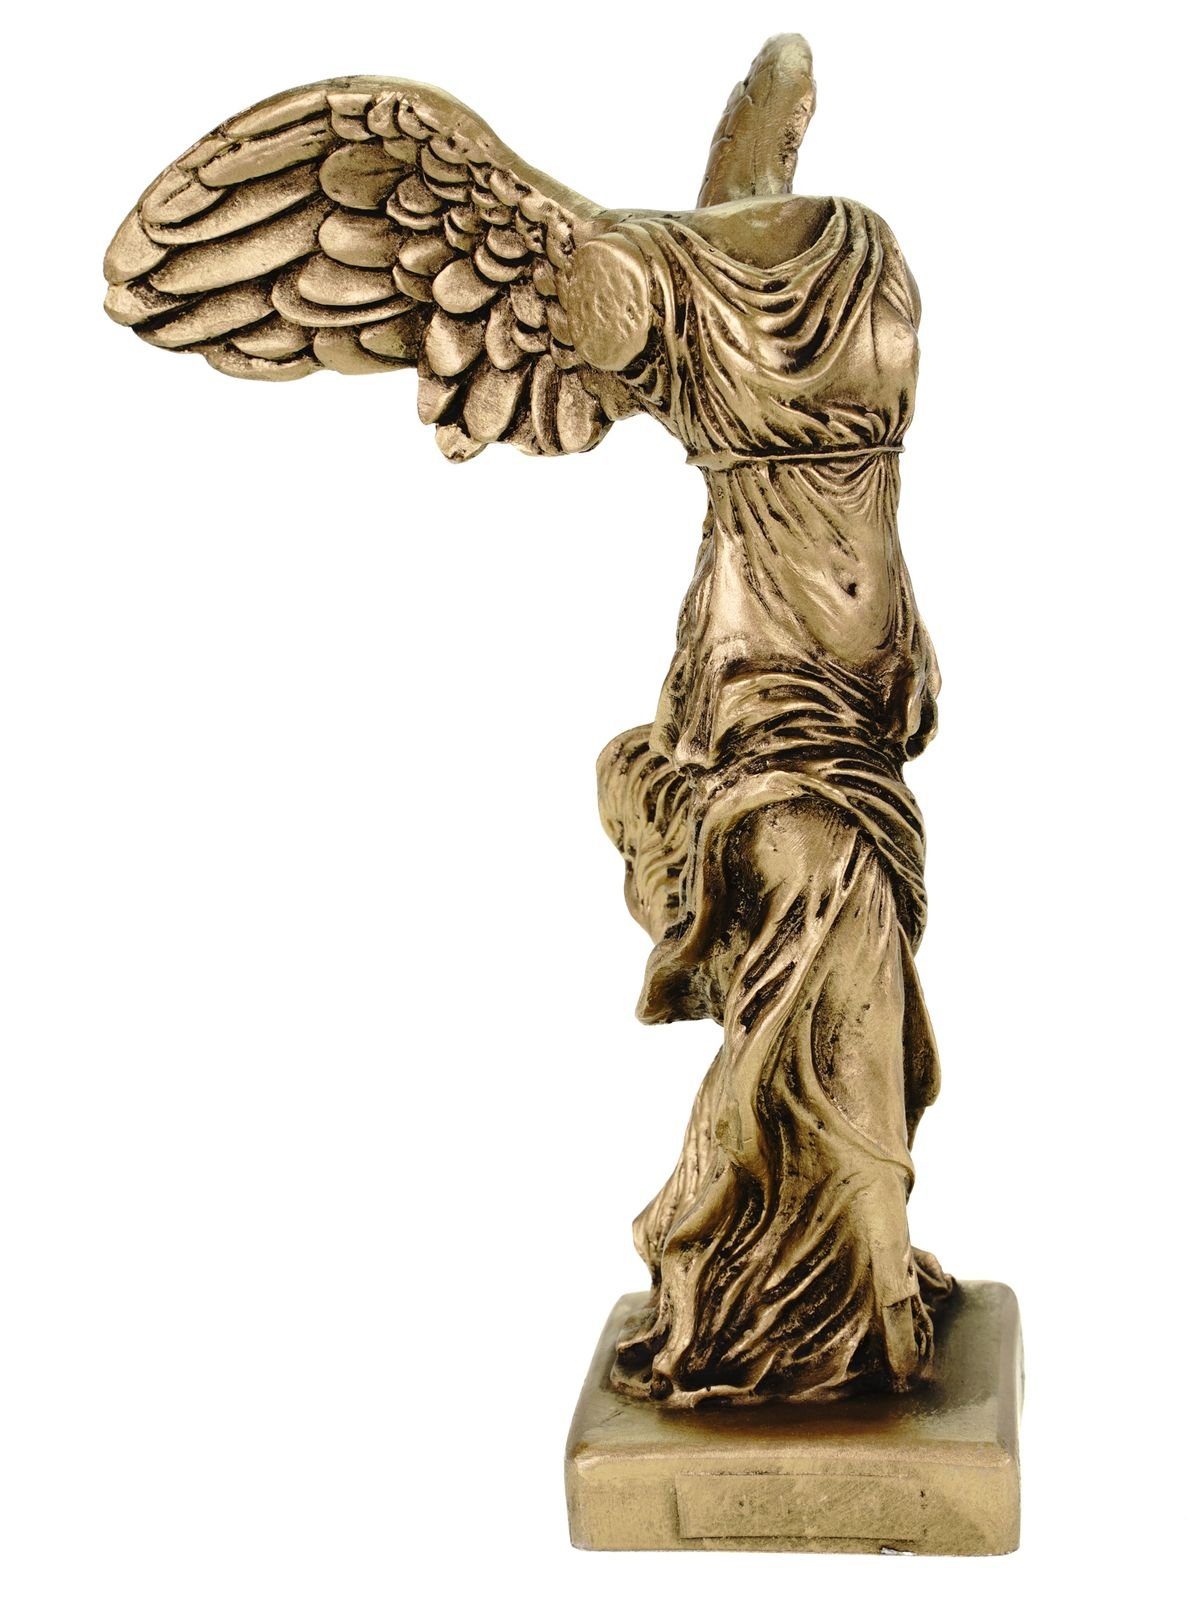 Kremers Schatzkiste Dekofigur Alabaster Nike Siegesgöttin von Samothrake Figur Skulptur 20 cm gold Siegesdenkmal | Dekofiguren